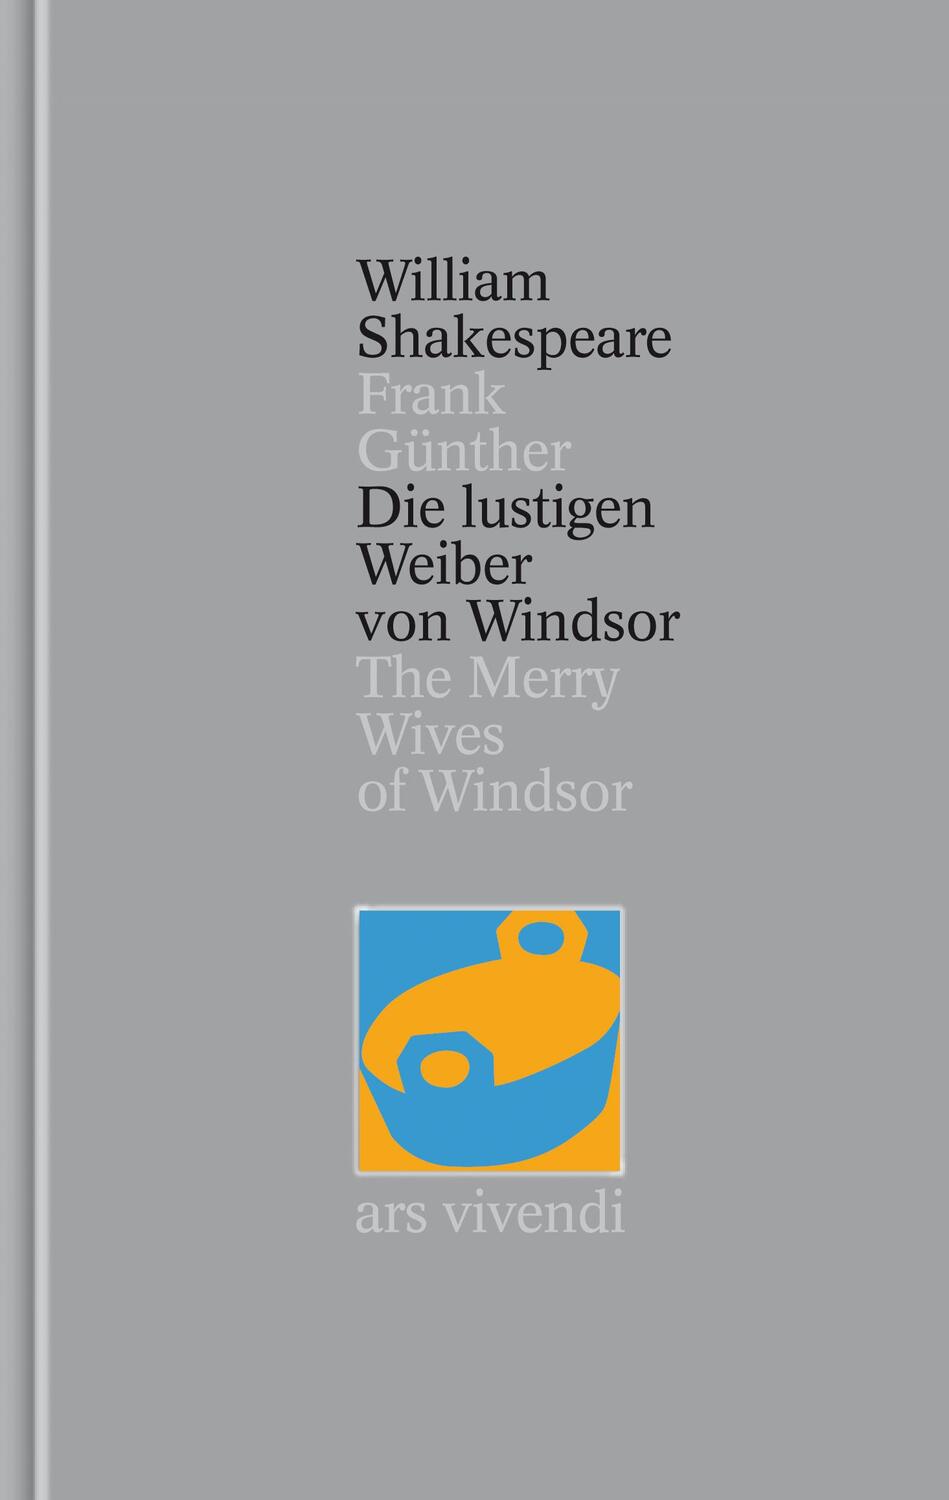 Die lustigen Weiber von Windsor / The Merry Wives of Windsor [Zweisprachig] (Shakespeare Gesamtausgabe, Band 24) - Shakespeare, William